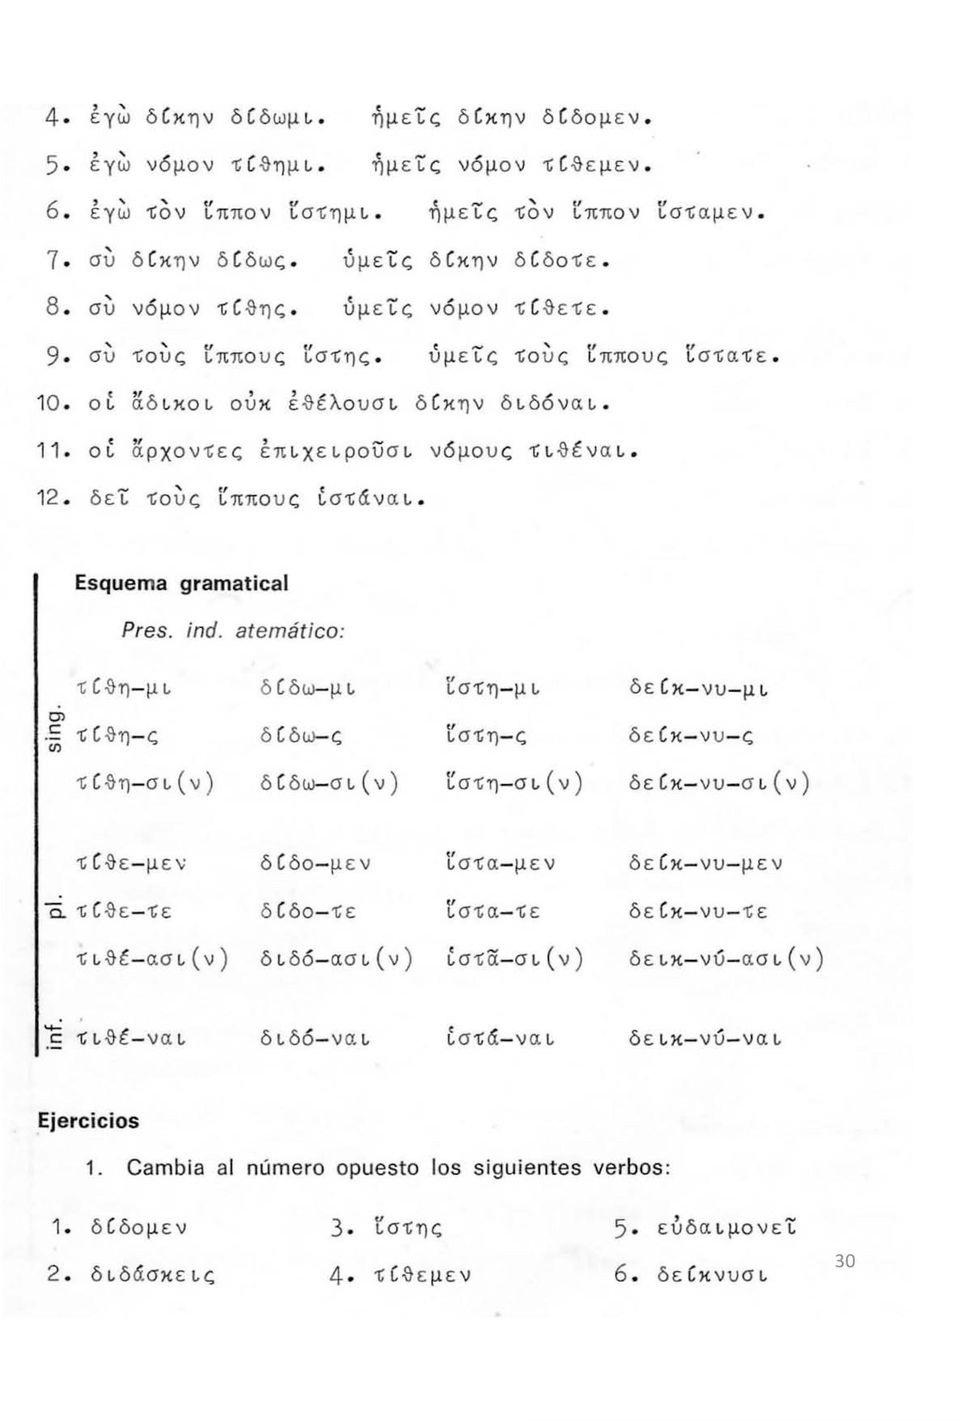 11 οί άρχοντες έπιχειρουσι νόμους Τιθέναι 12 δει Τούς ίππους ίστάναι Esquema gramatical Pres. ind.